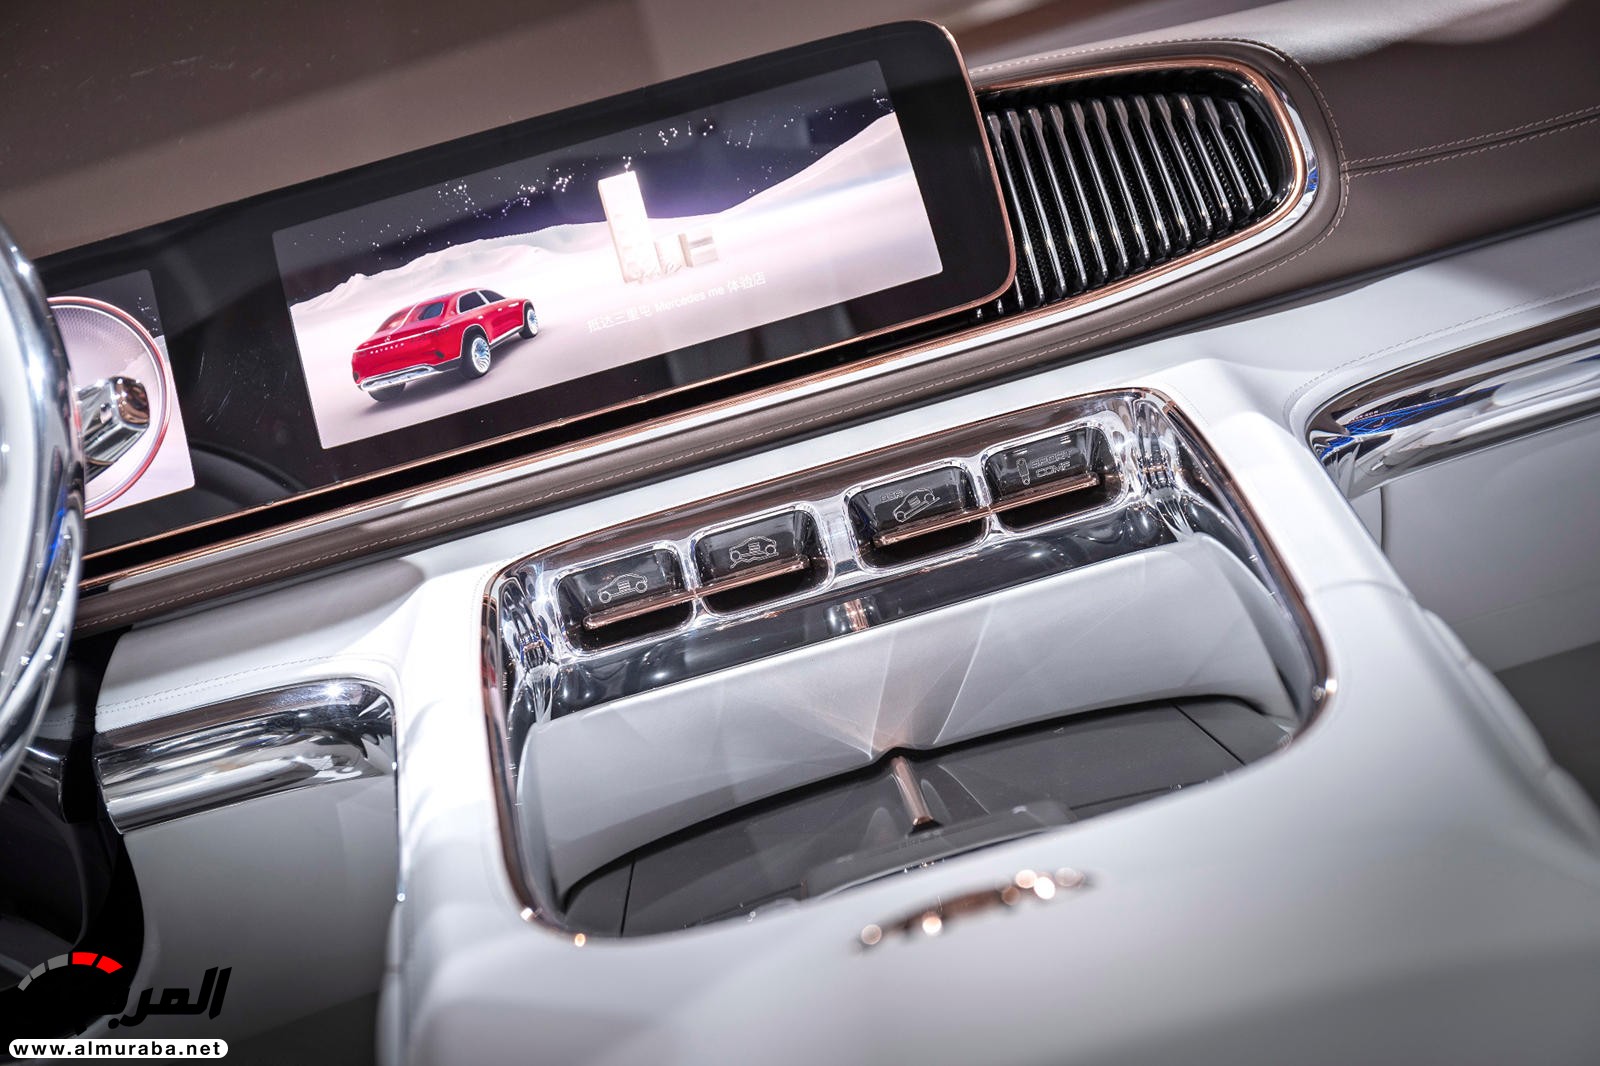 "بالصور" نظرة على مرسيدس مايباخ SUV الاختبارية وفخامتها الداخلية والخارجية 78